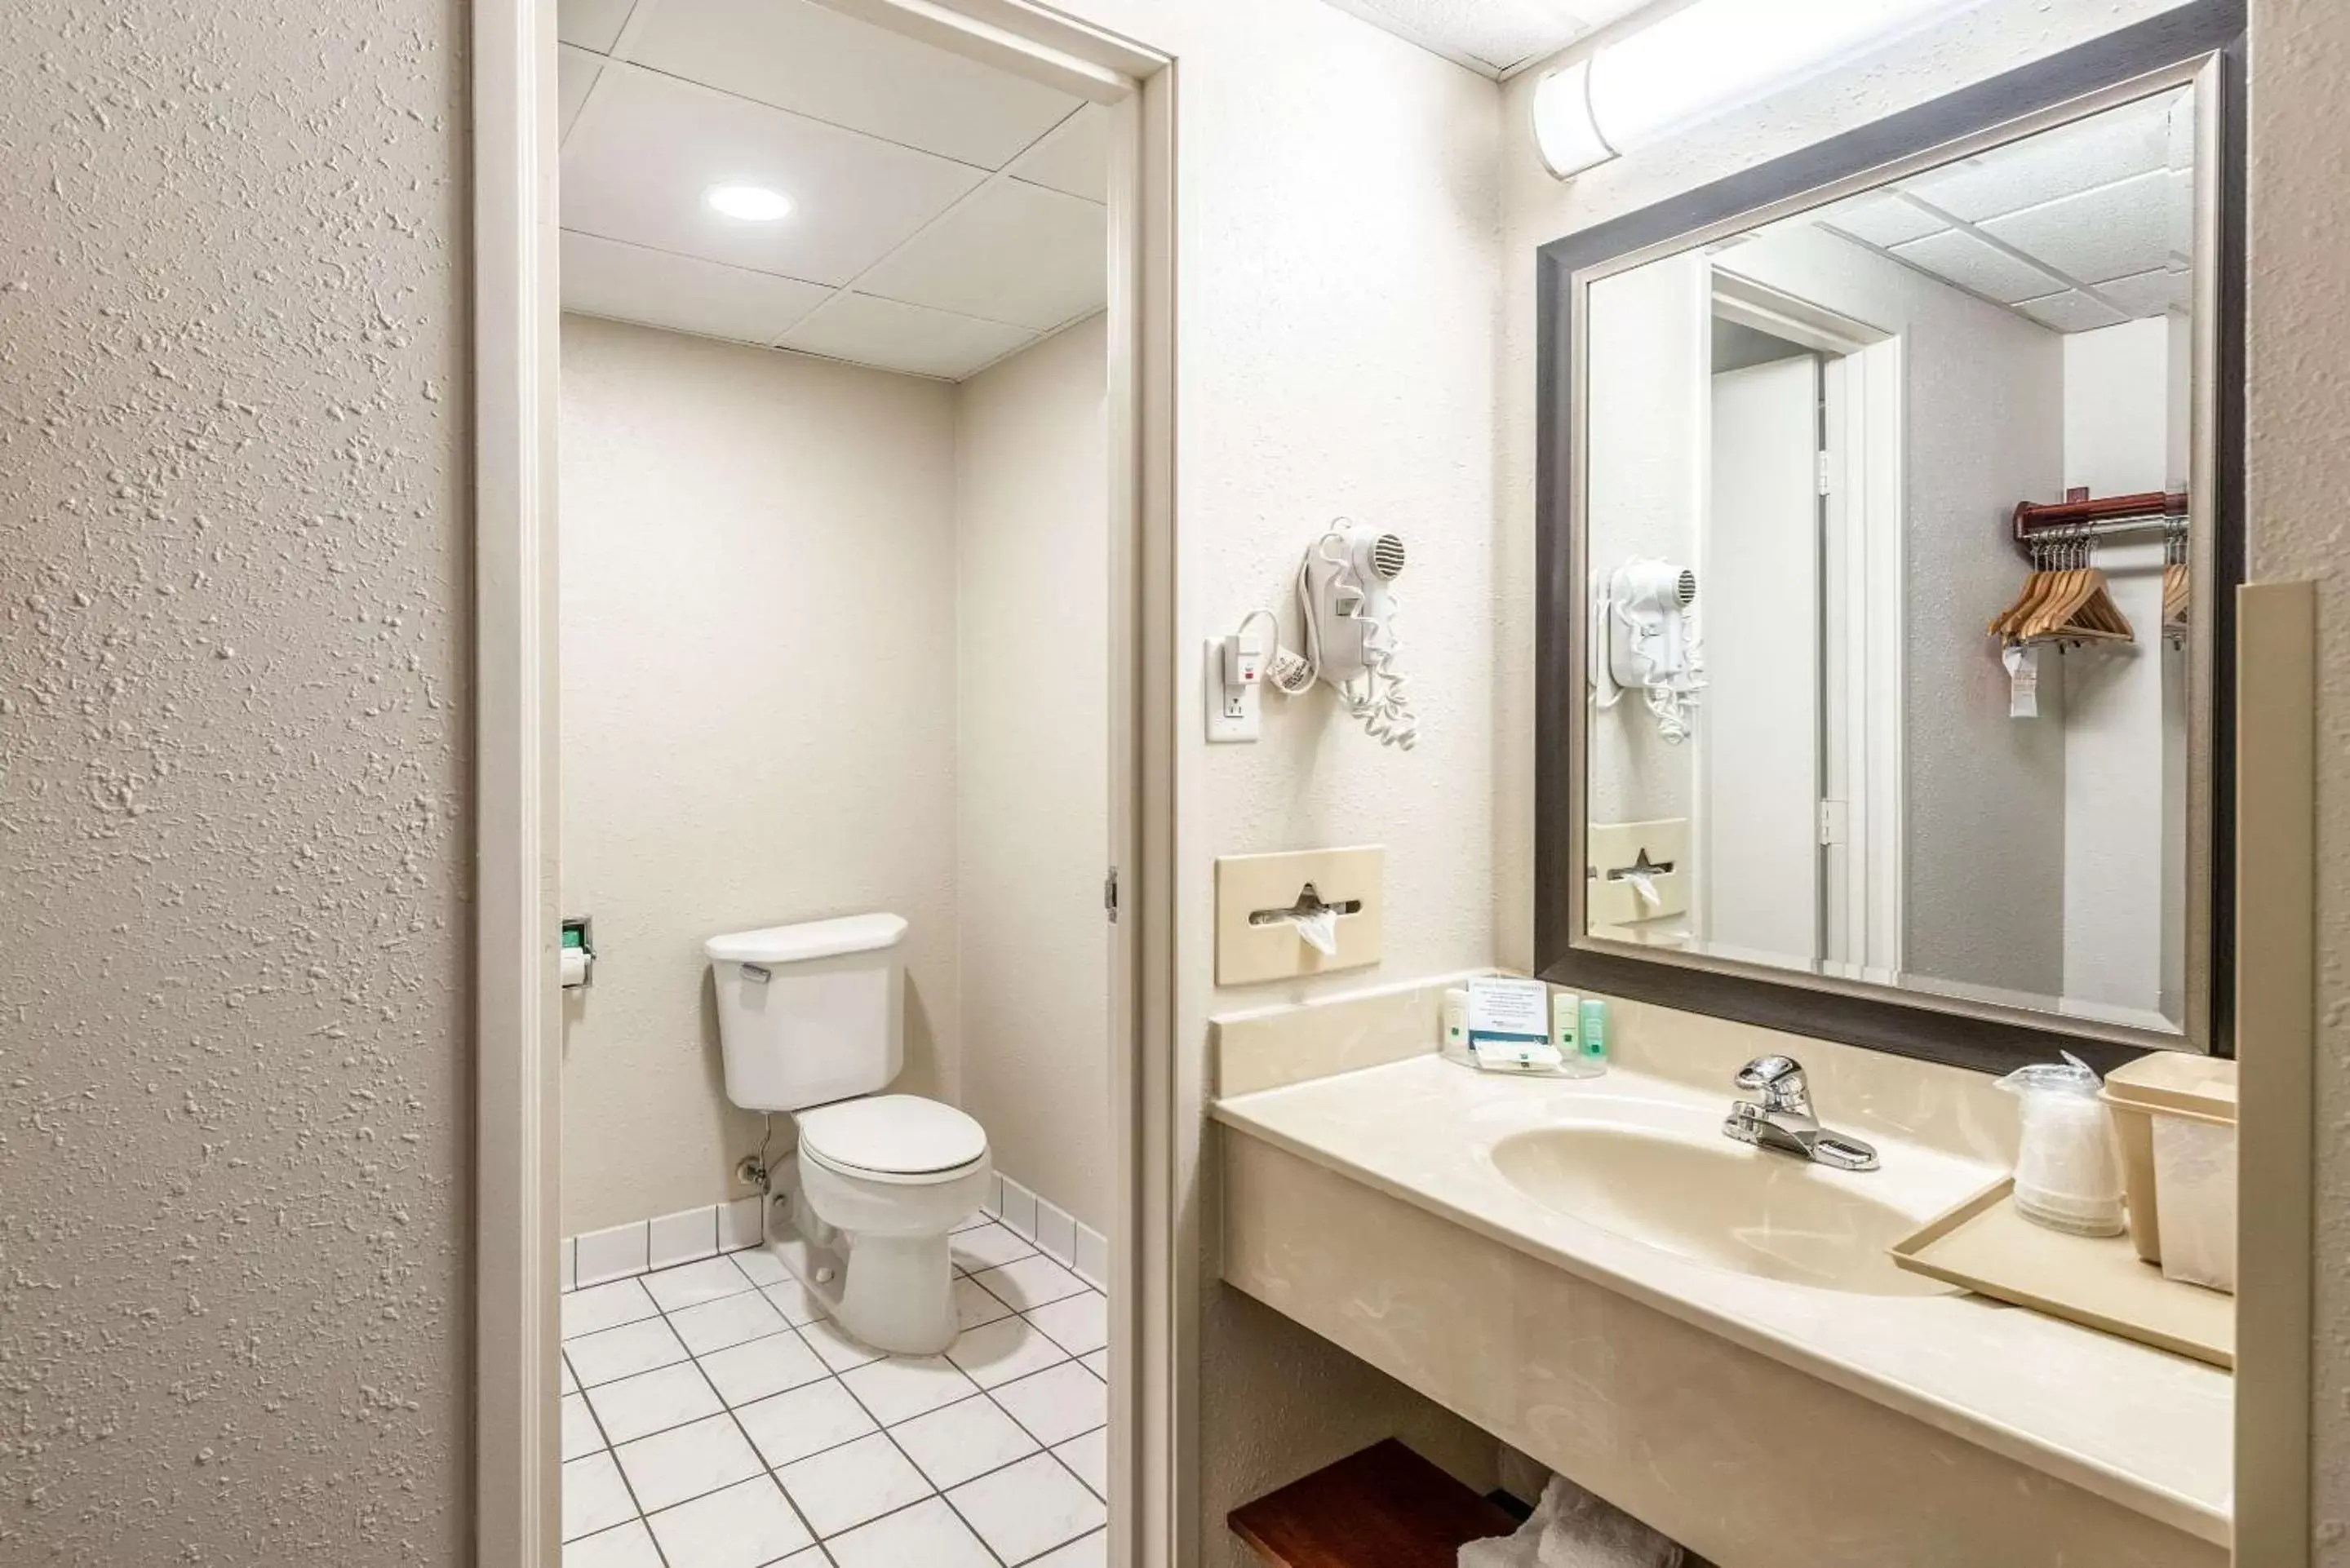 Photo of the whole room, Bathroom in Quality Inn Bradley- Bourbonnais